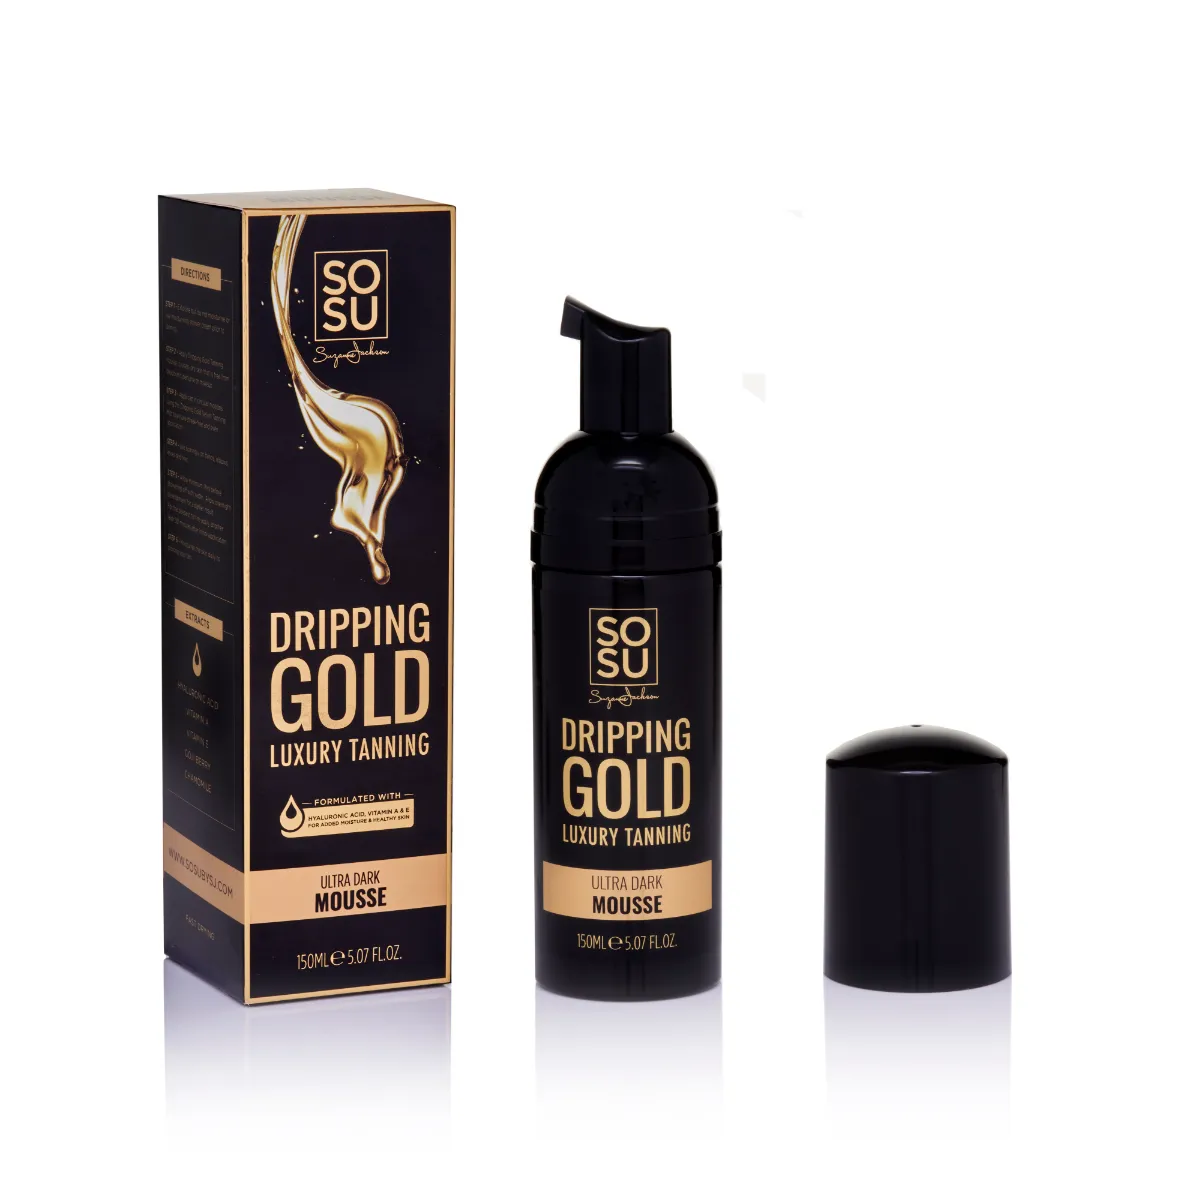 SOSU Dripping Gold Luxury Mousse samoopalovací pěna ultra dark 150 ml